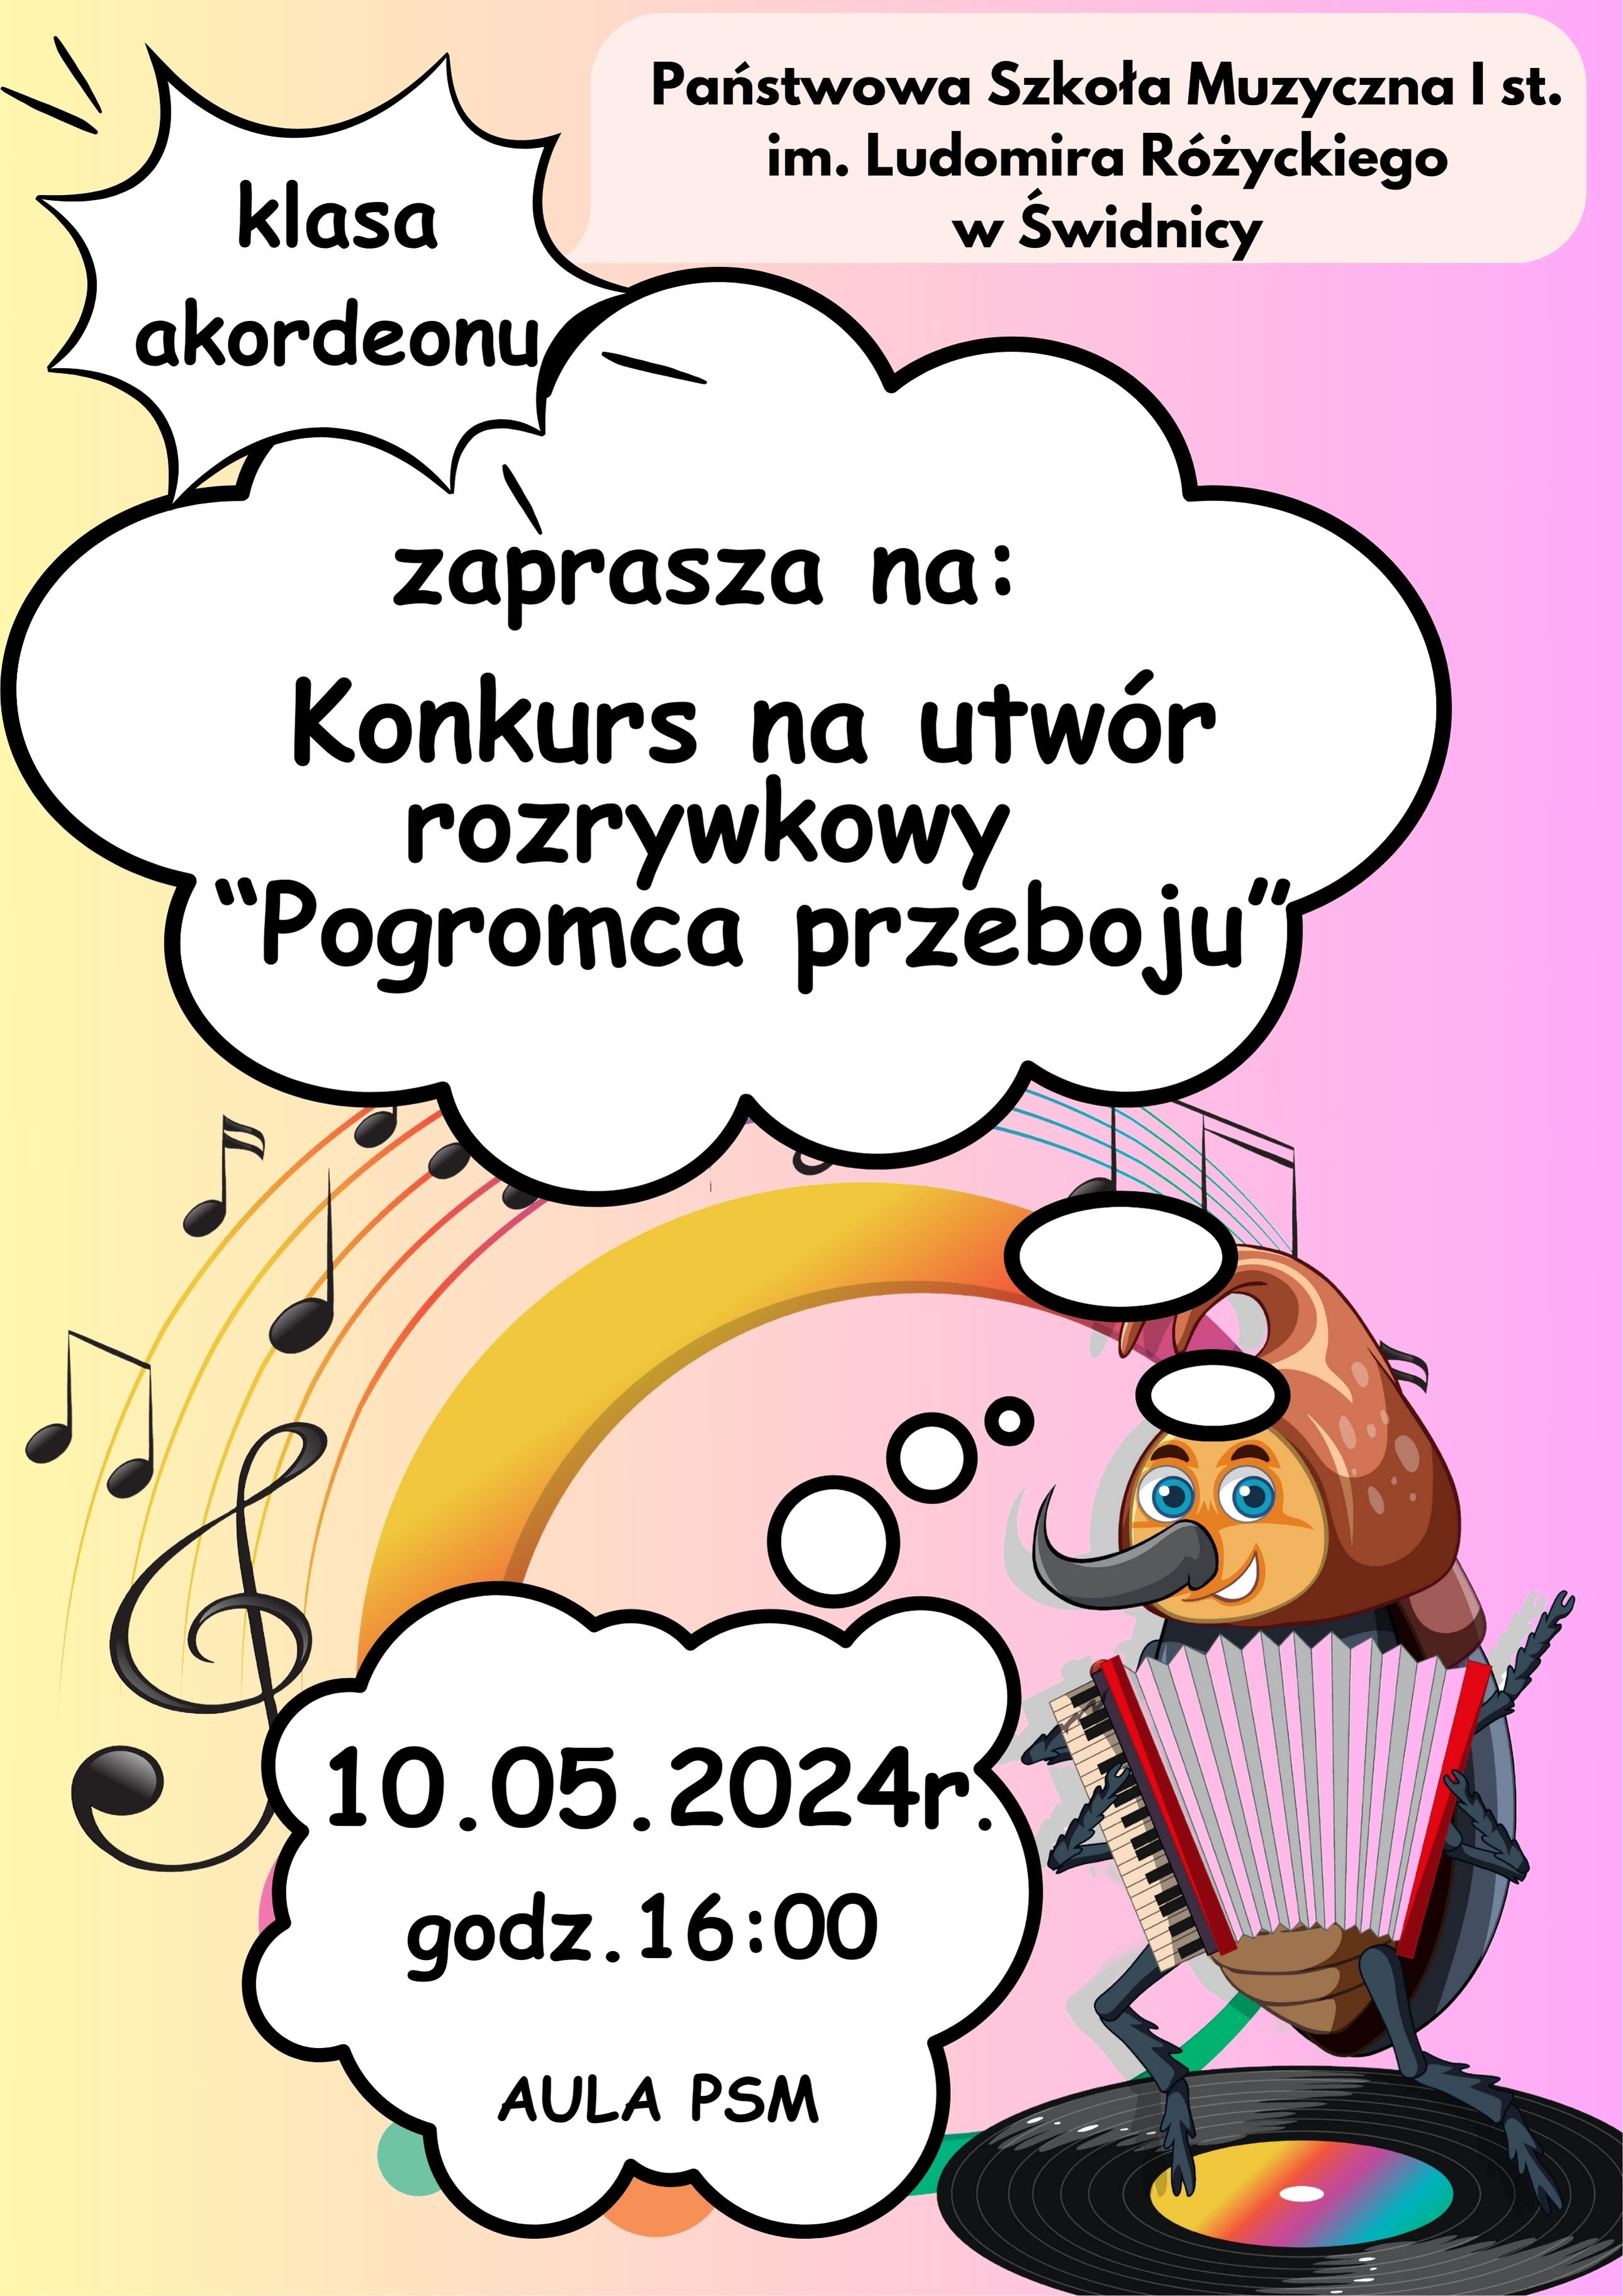 Plaka informuje o konkursie na utwór rozrywkowy klasy akordeonu. Na żółto-różowym tle znajdują się białe chmurki w których umieszczone są napisy informyjące. Na dole po prawej stronie rysunek żuka (owad) grjącego na akordeonie.